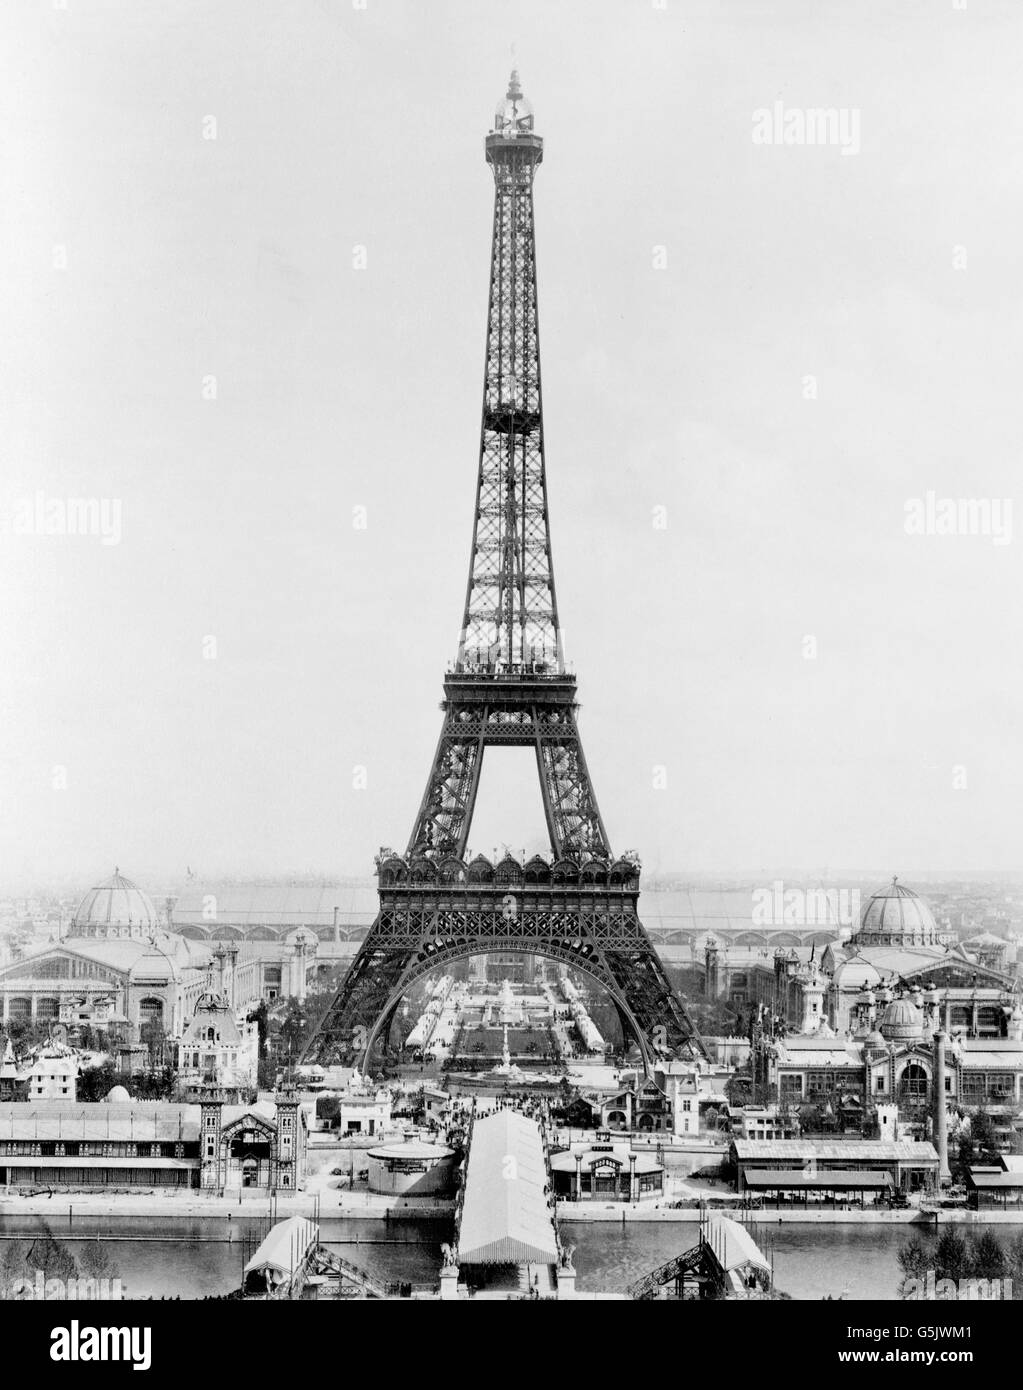 Esposizione di Parigi 1889. La Torre Eiffel e gli edifici espositivi su Champ de Mars come si vede dal Troacadero, Exposition Universelle, 1889. La Torre Eiffel è stata costruita per servire come ingresso a questa fiera mondiale. Foto Stock